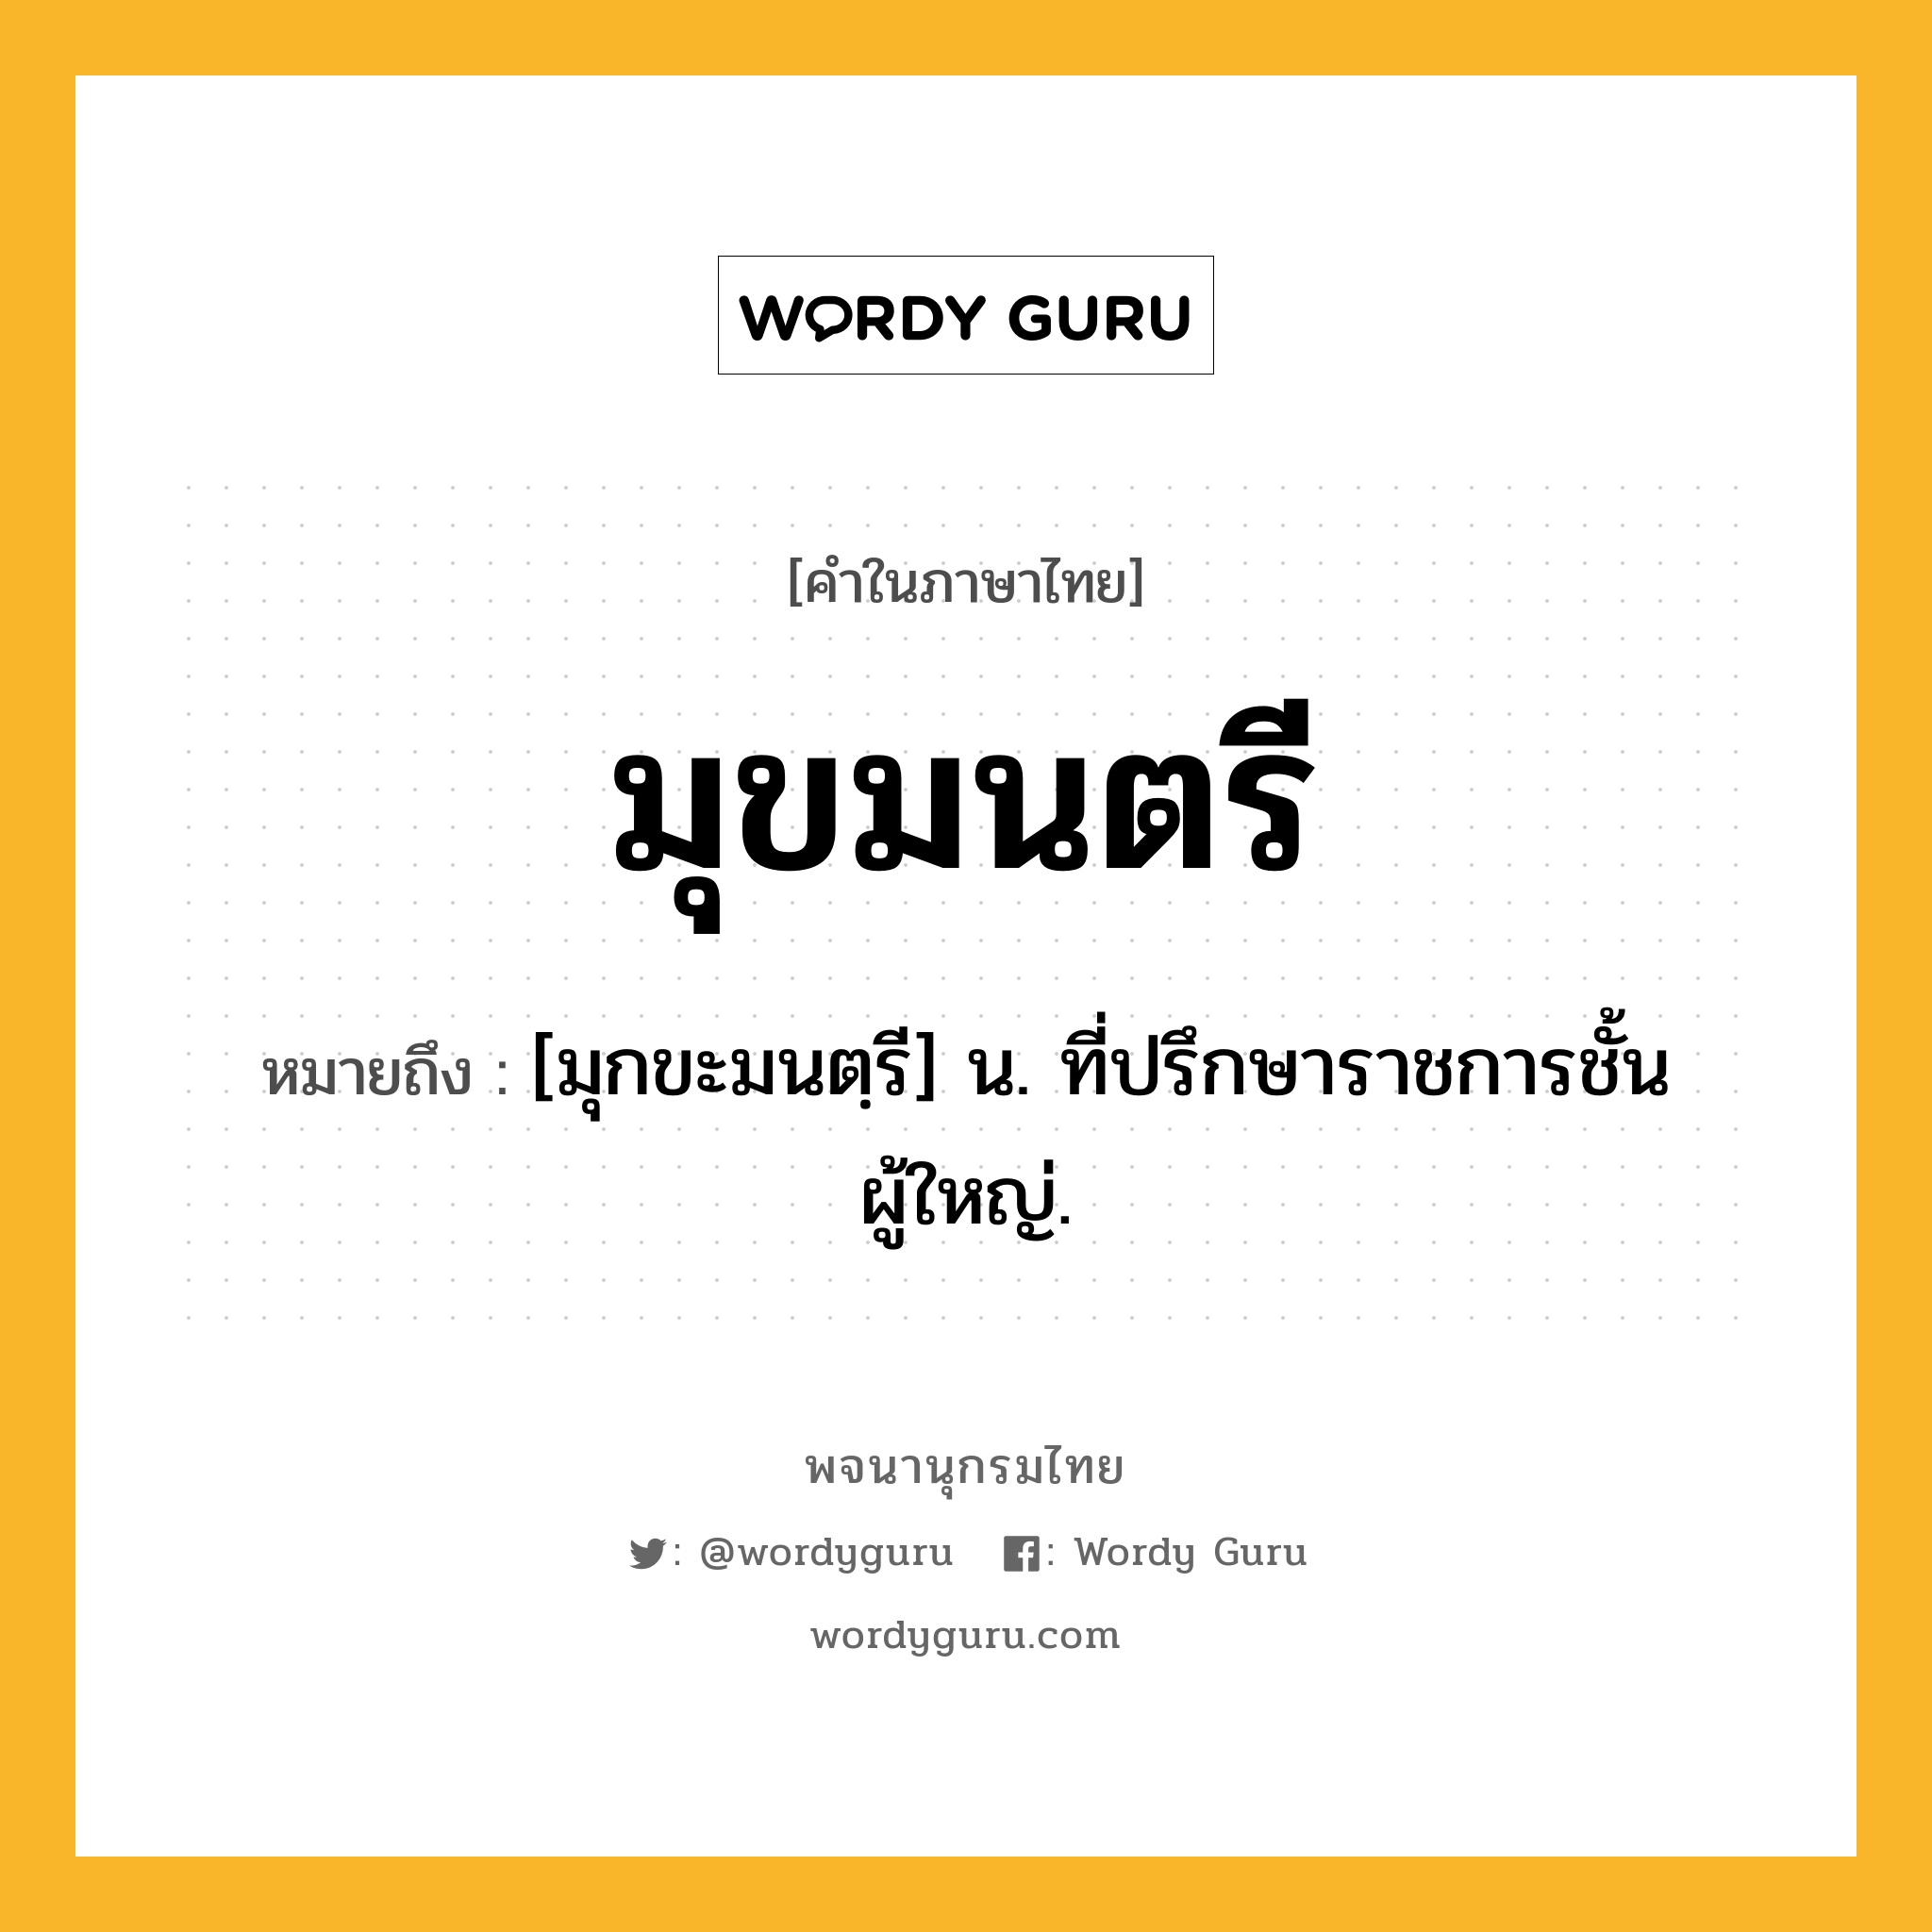 มุขมนตรี ความหมาย หมายถึงอะไร?, คำในภาษาไทย มุขมนตรี หมายถึง [มุกขะมนตฺรี] น. ที่ปรึกษาราชการชั้นผู้ใหญ่.